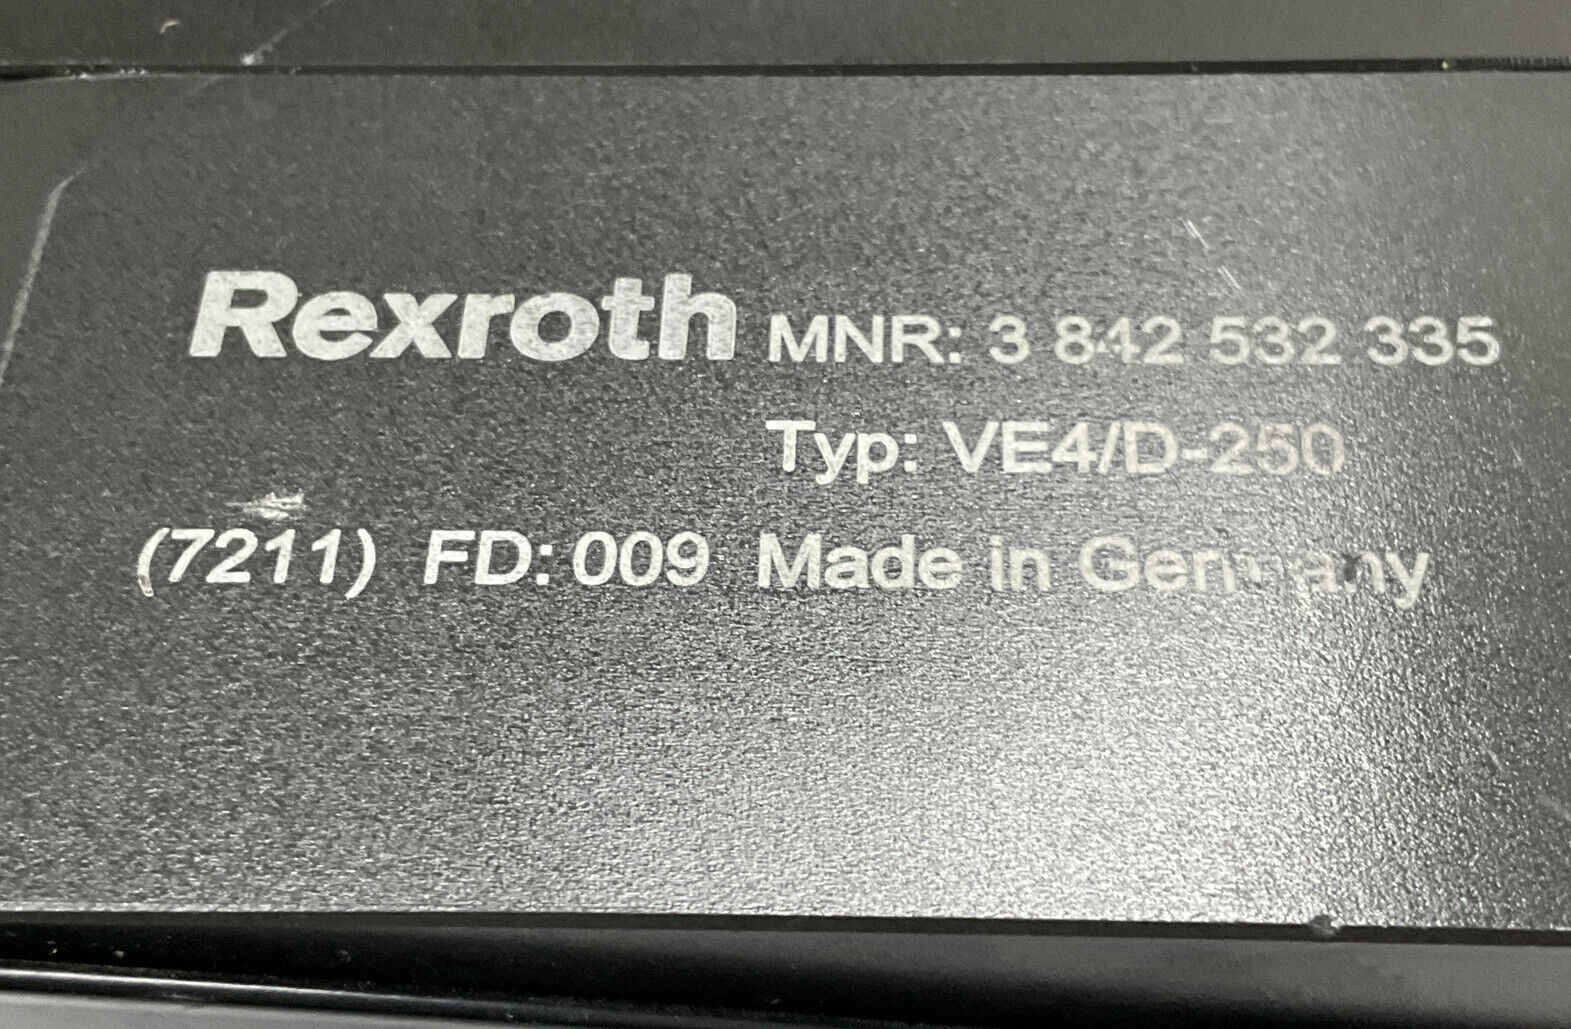 Bosch Rexroth 3-842-532-335 / VE2/D250 Pneumatic Stop Gate (CL297) - 0